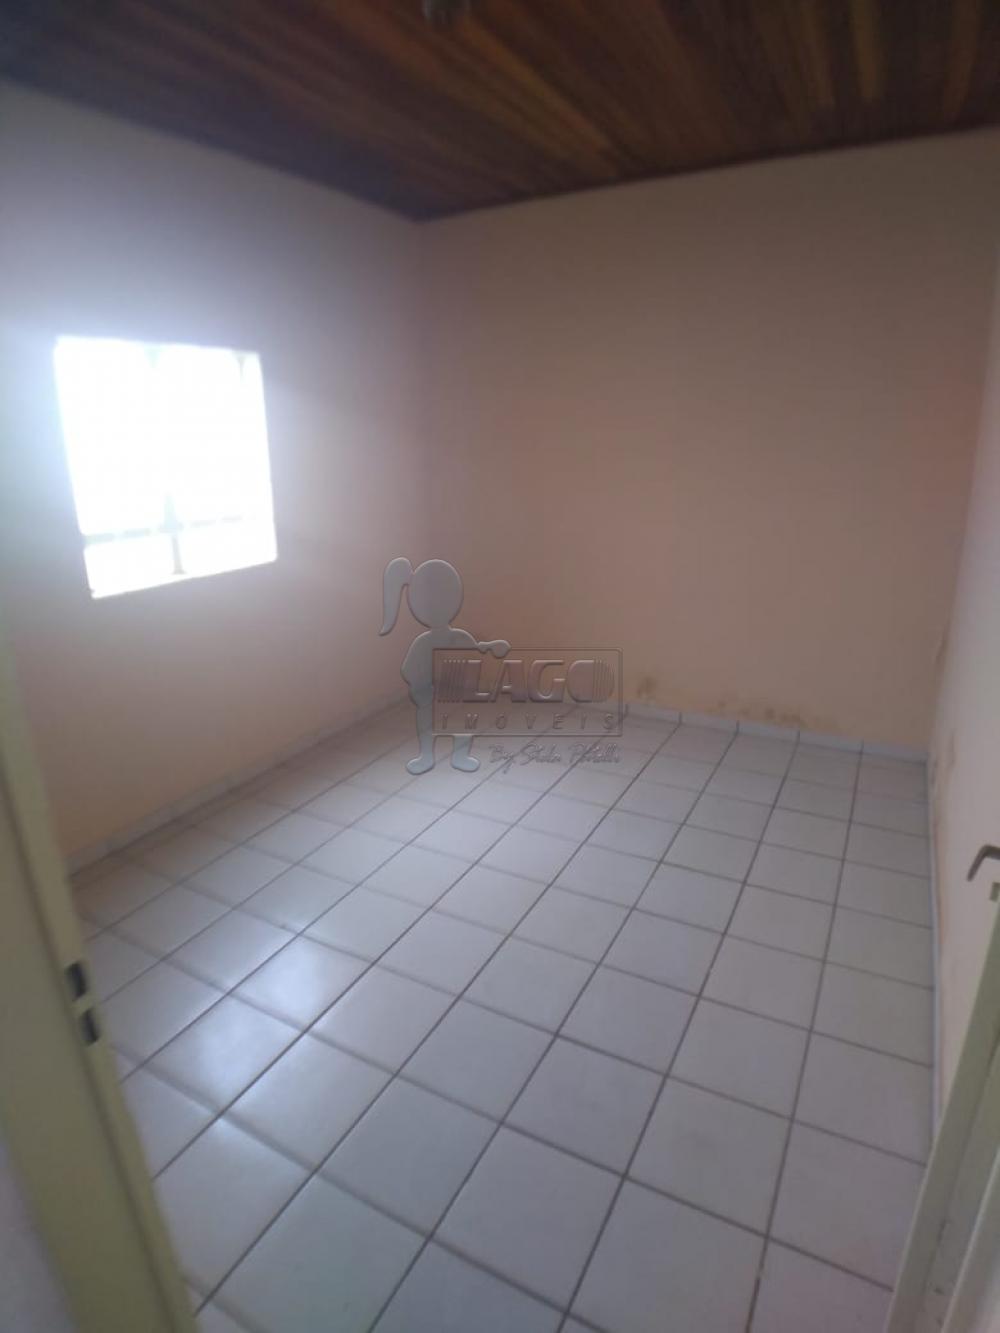 Alugar Casa / Padrão em Ribeirão Preto R$ 900,00 - Foto 4